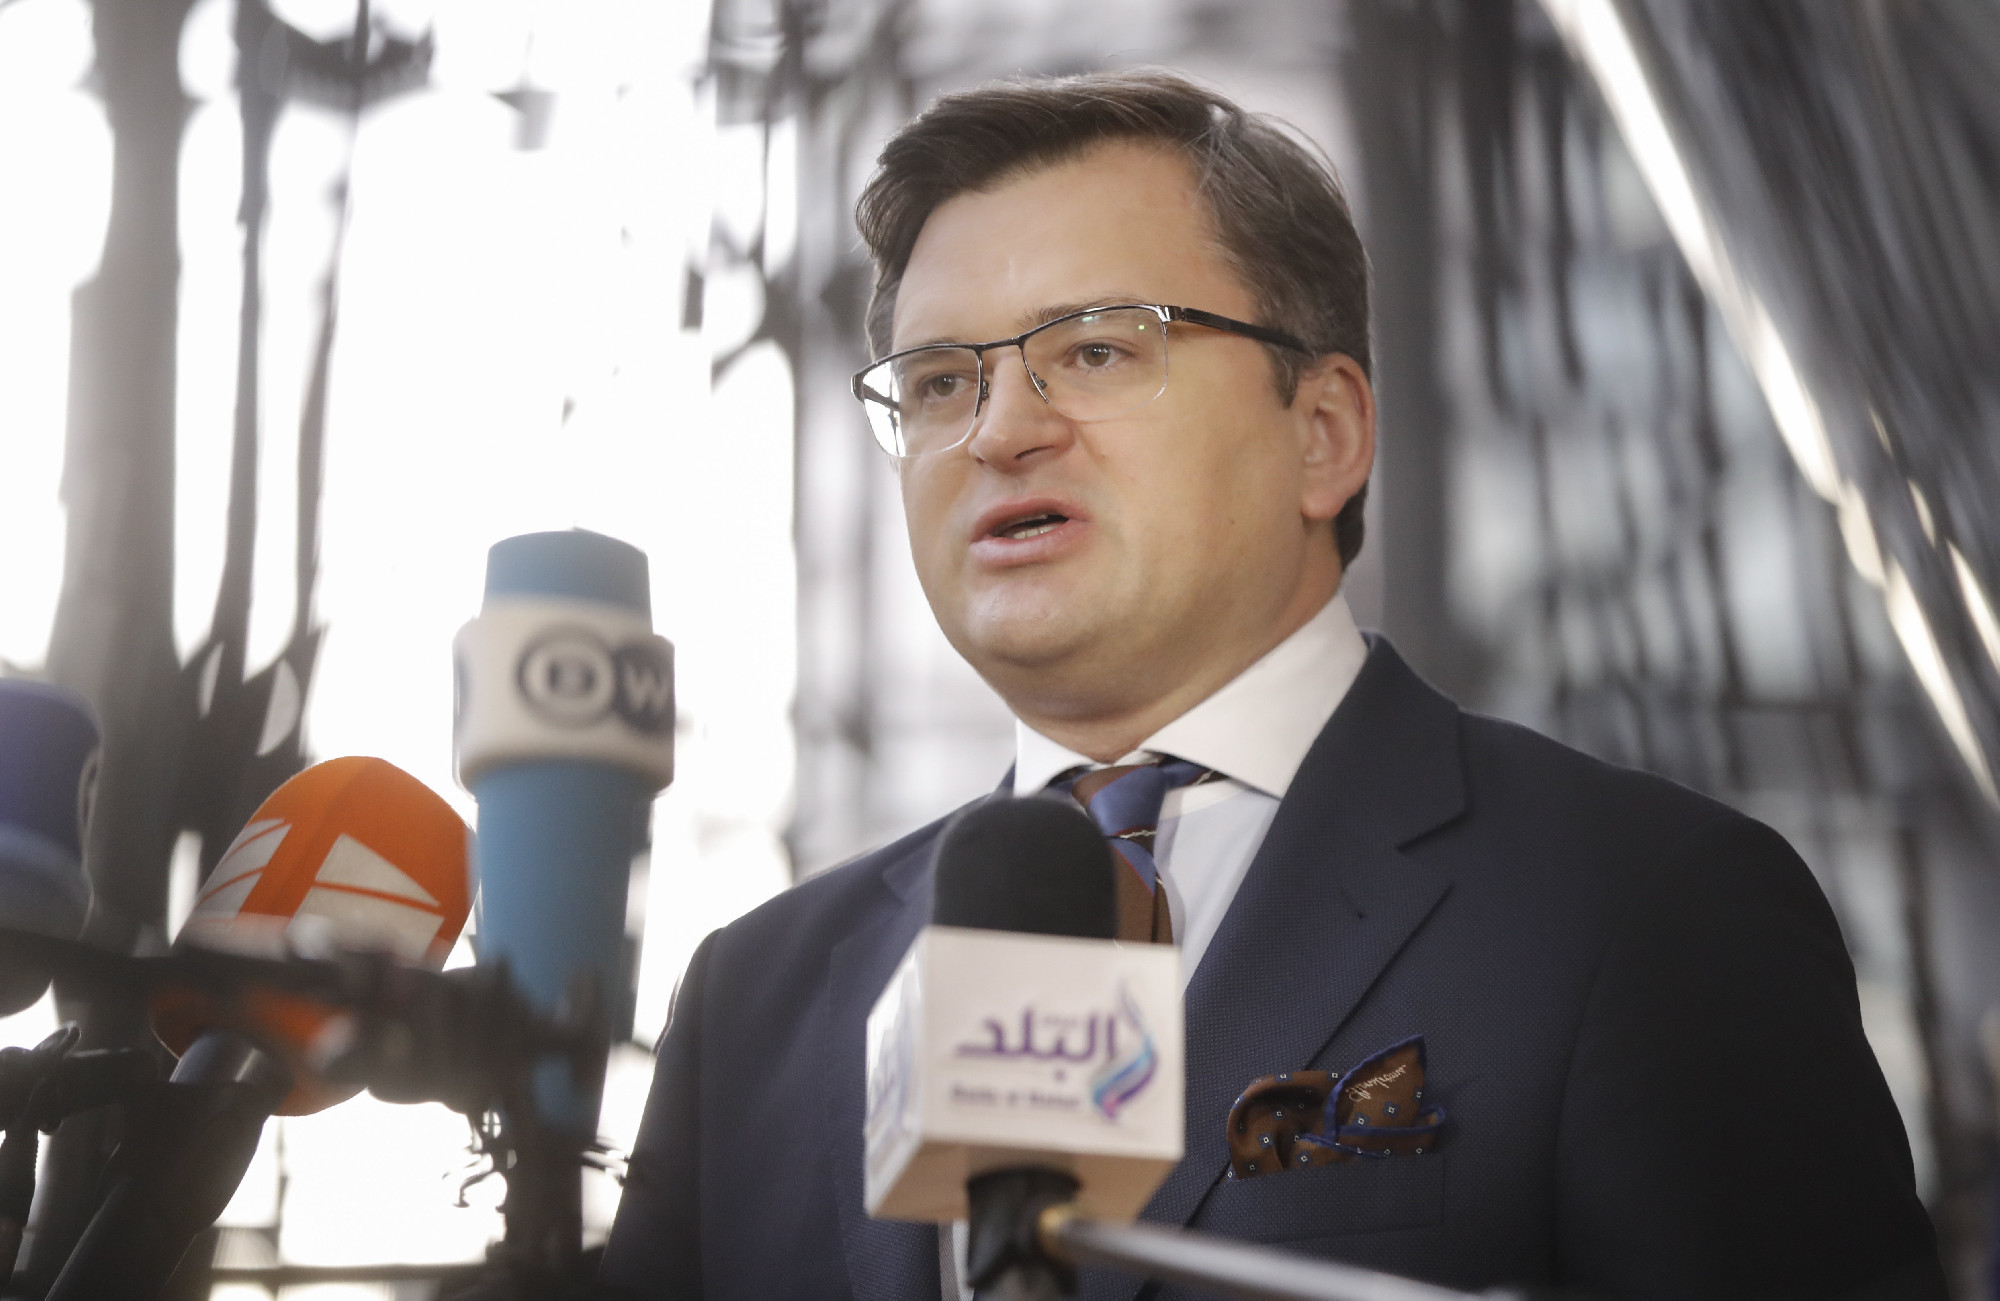 Abszurdnak nevezte az ukrán külügyminiszter azt a vádat, hogy piszkos bombát vetnének be